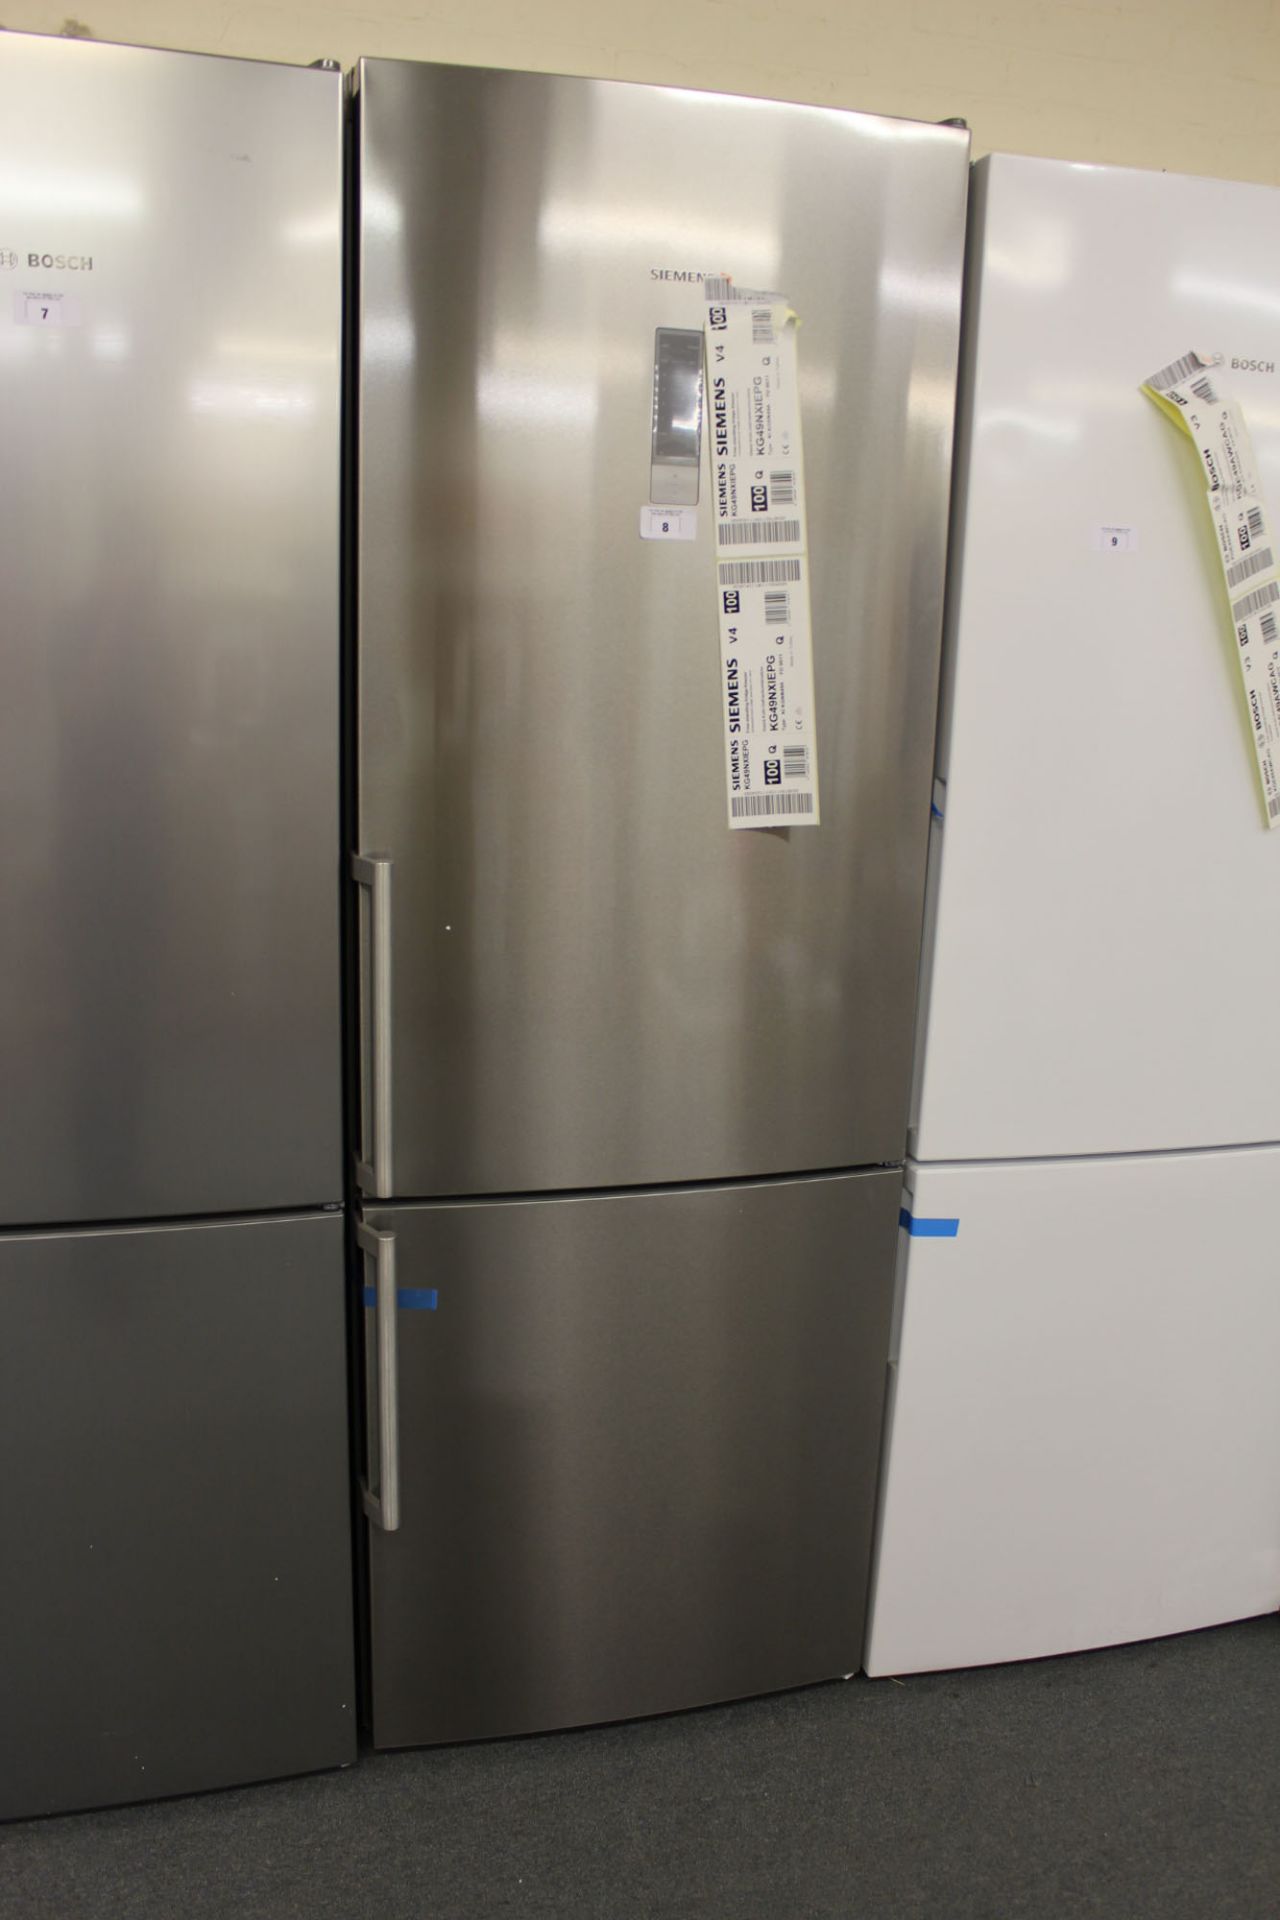 KG49NXIEPGB Siemens Free-standing fridge-freezer